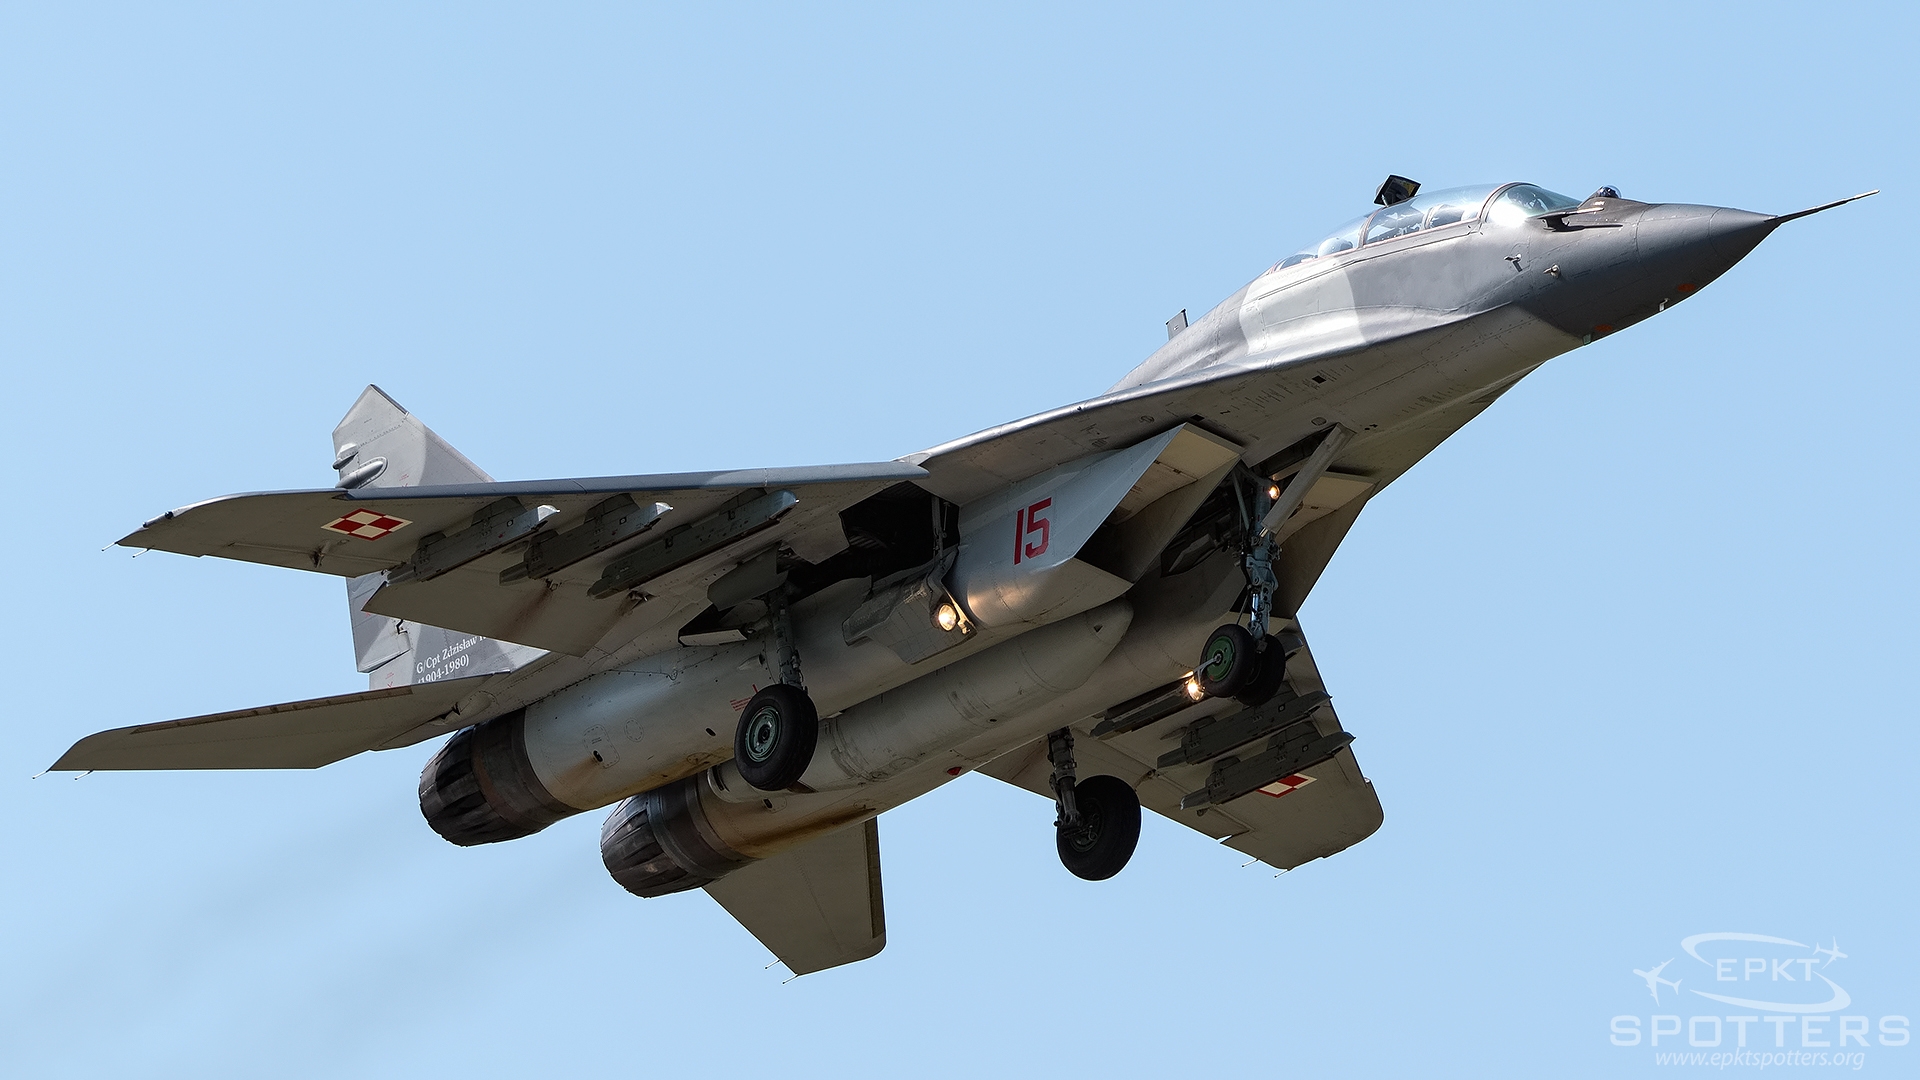 15 - Mikoyan Gurevich MiG-29 UB  (Poland - Air Force) / 23 Baza Lotnictwa Taktycznego - Minsk Mazowiecki Poland [EPMM/]